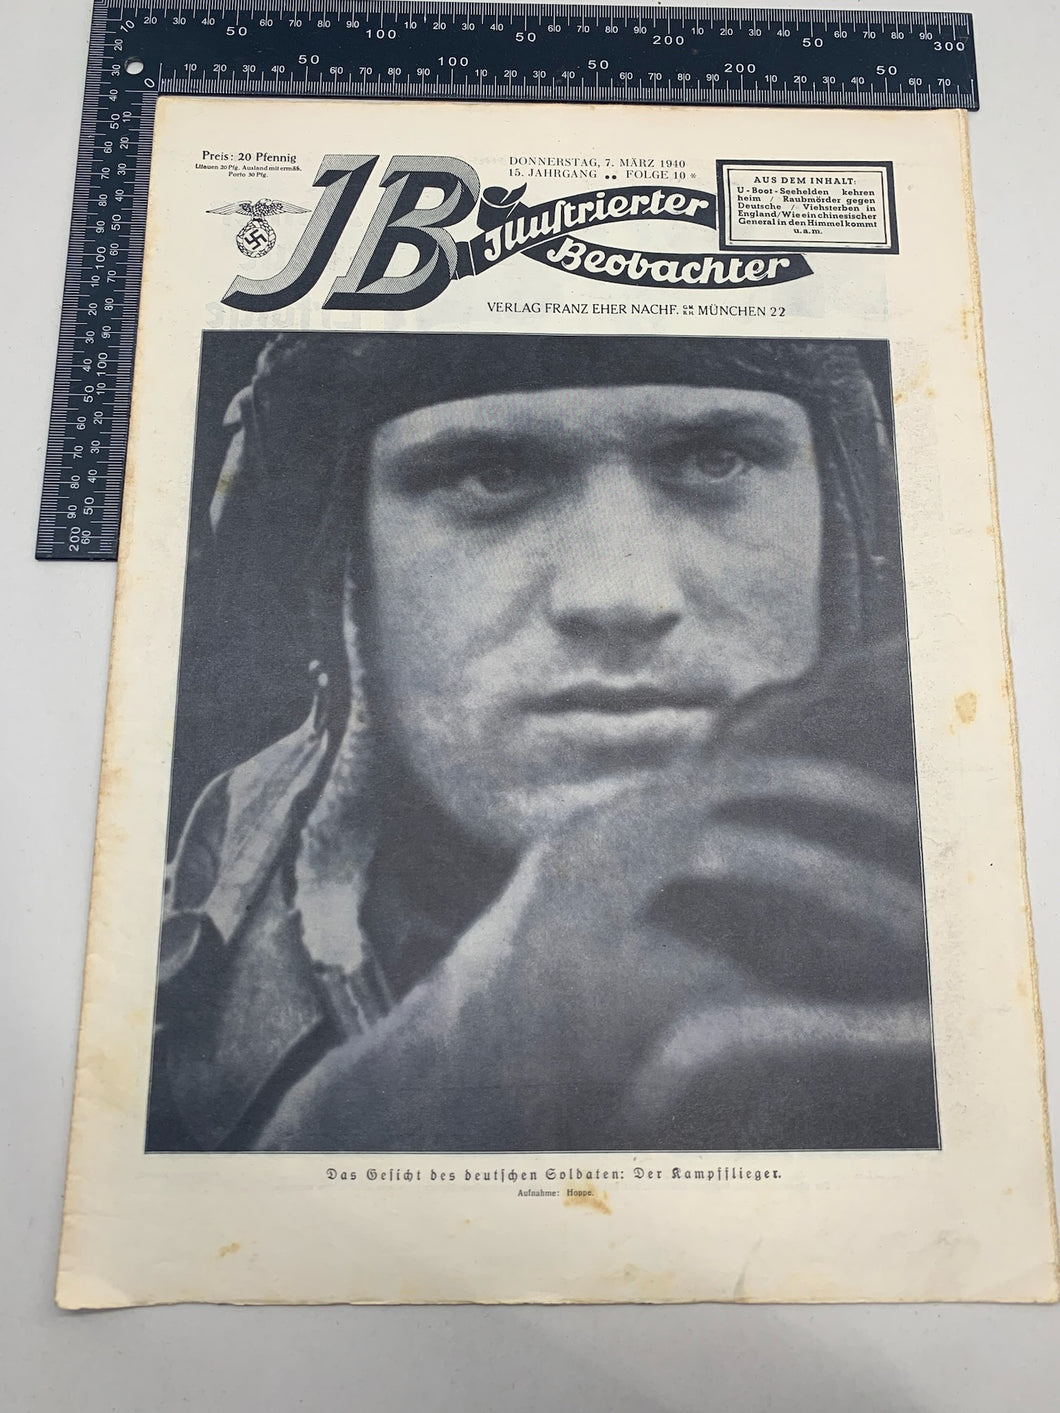 JB Juustrierter Beobachter NSDAP Magazine Original WW2 German - 7th March 1940